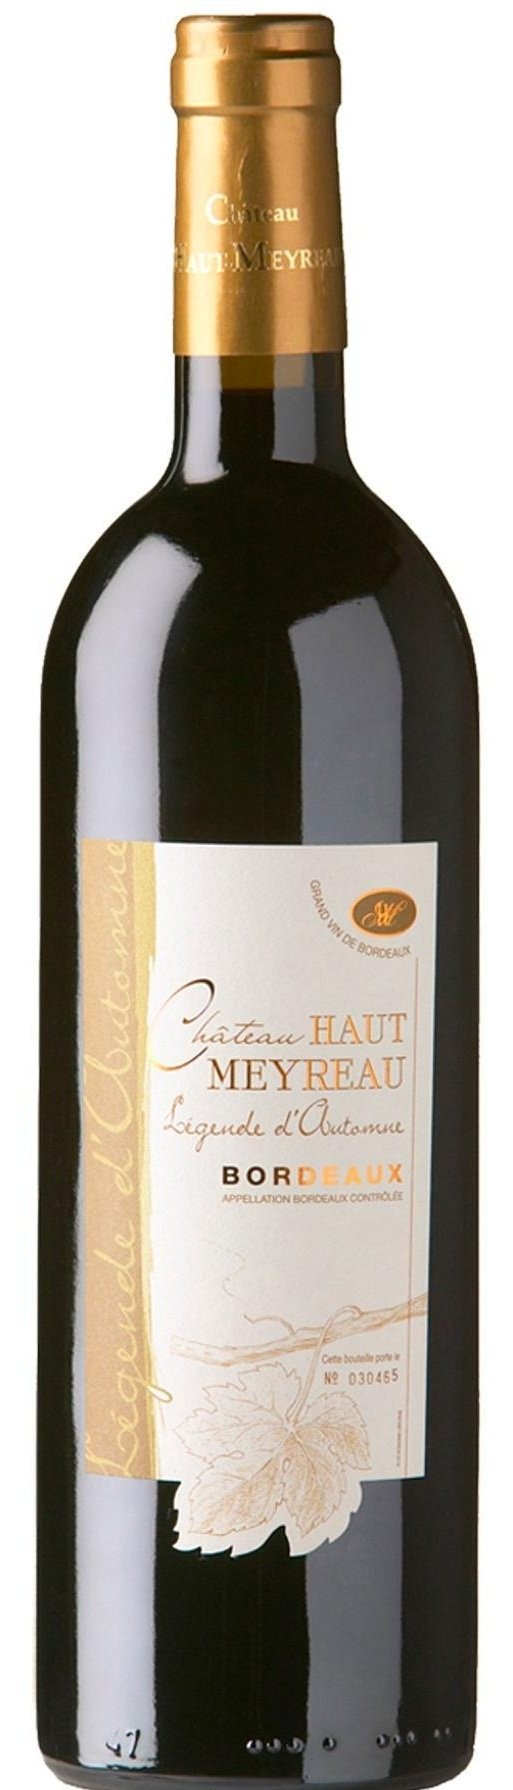 Chateau Haut Meyreau Bordeaux L'Mae du Terroir 2016 – Wine Chateau